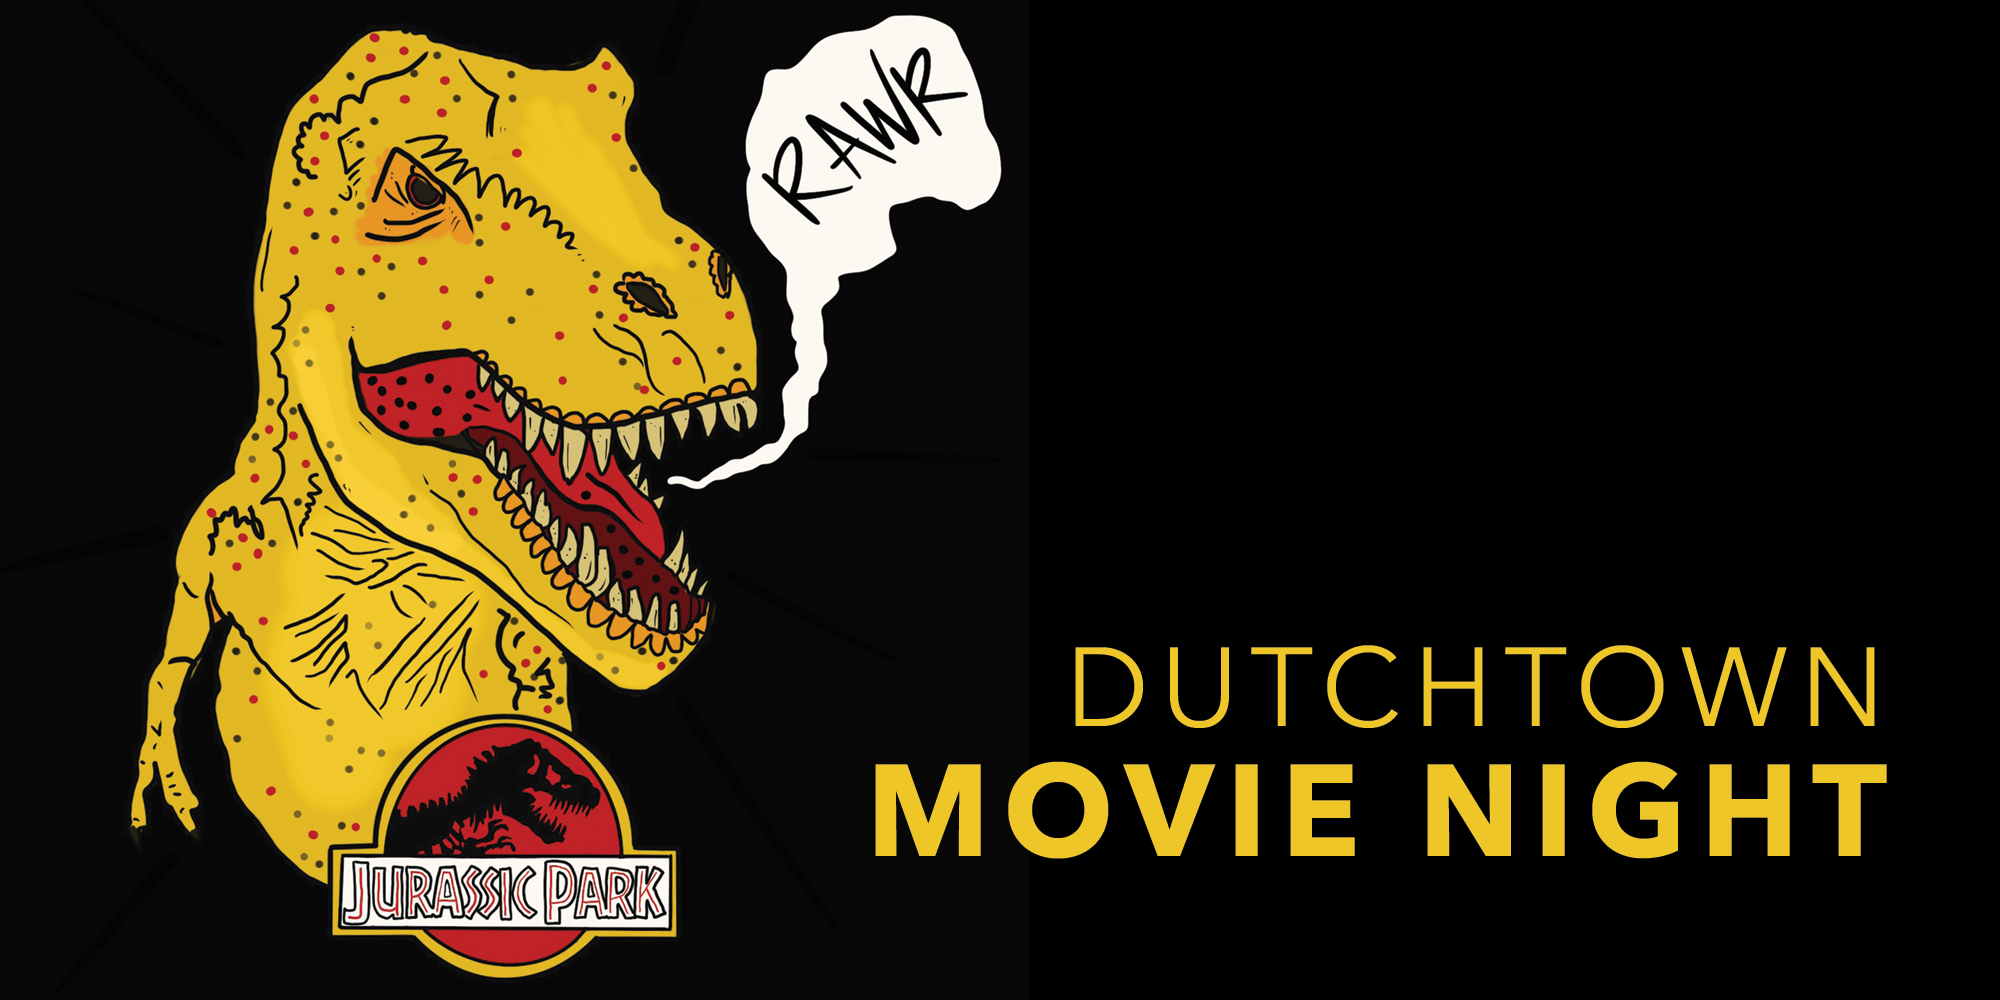 Jurassic Park at Dutchtown Movie Night.